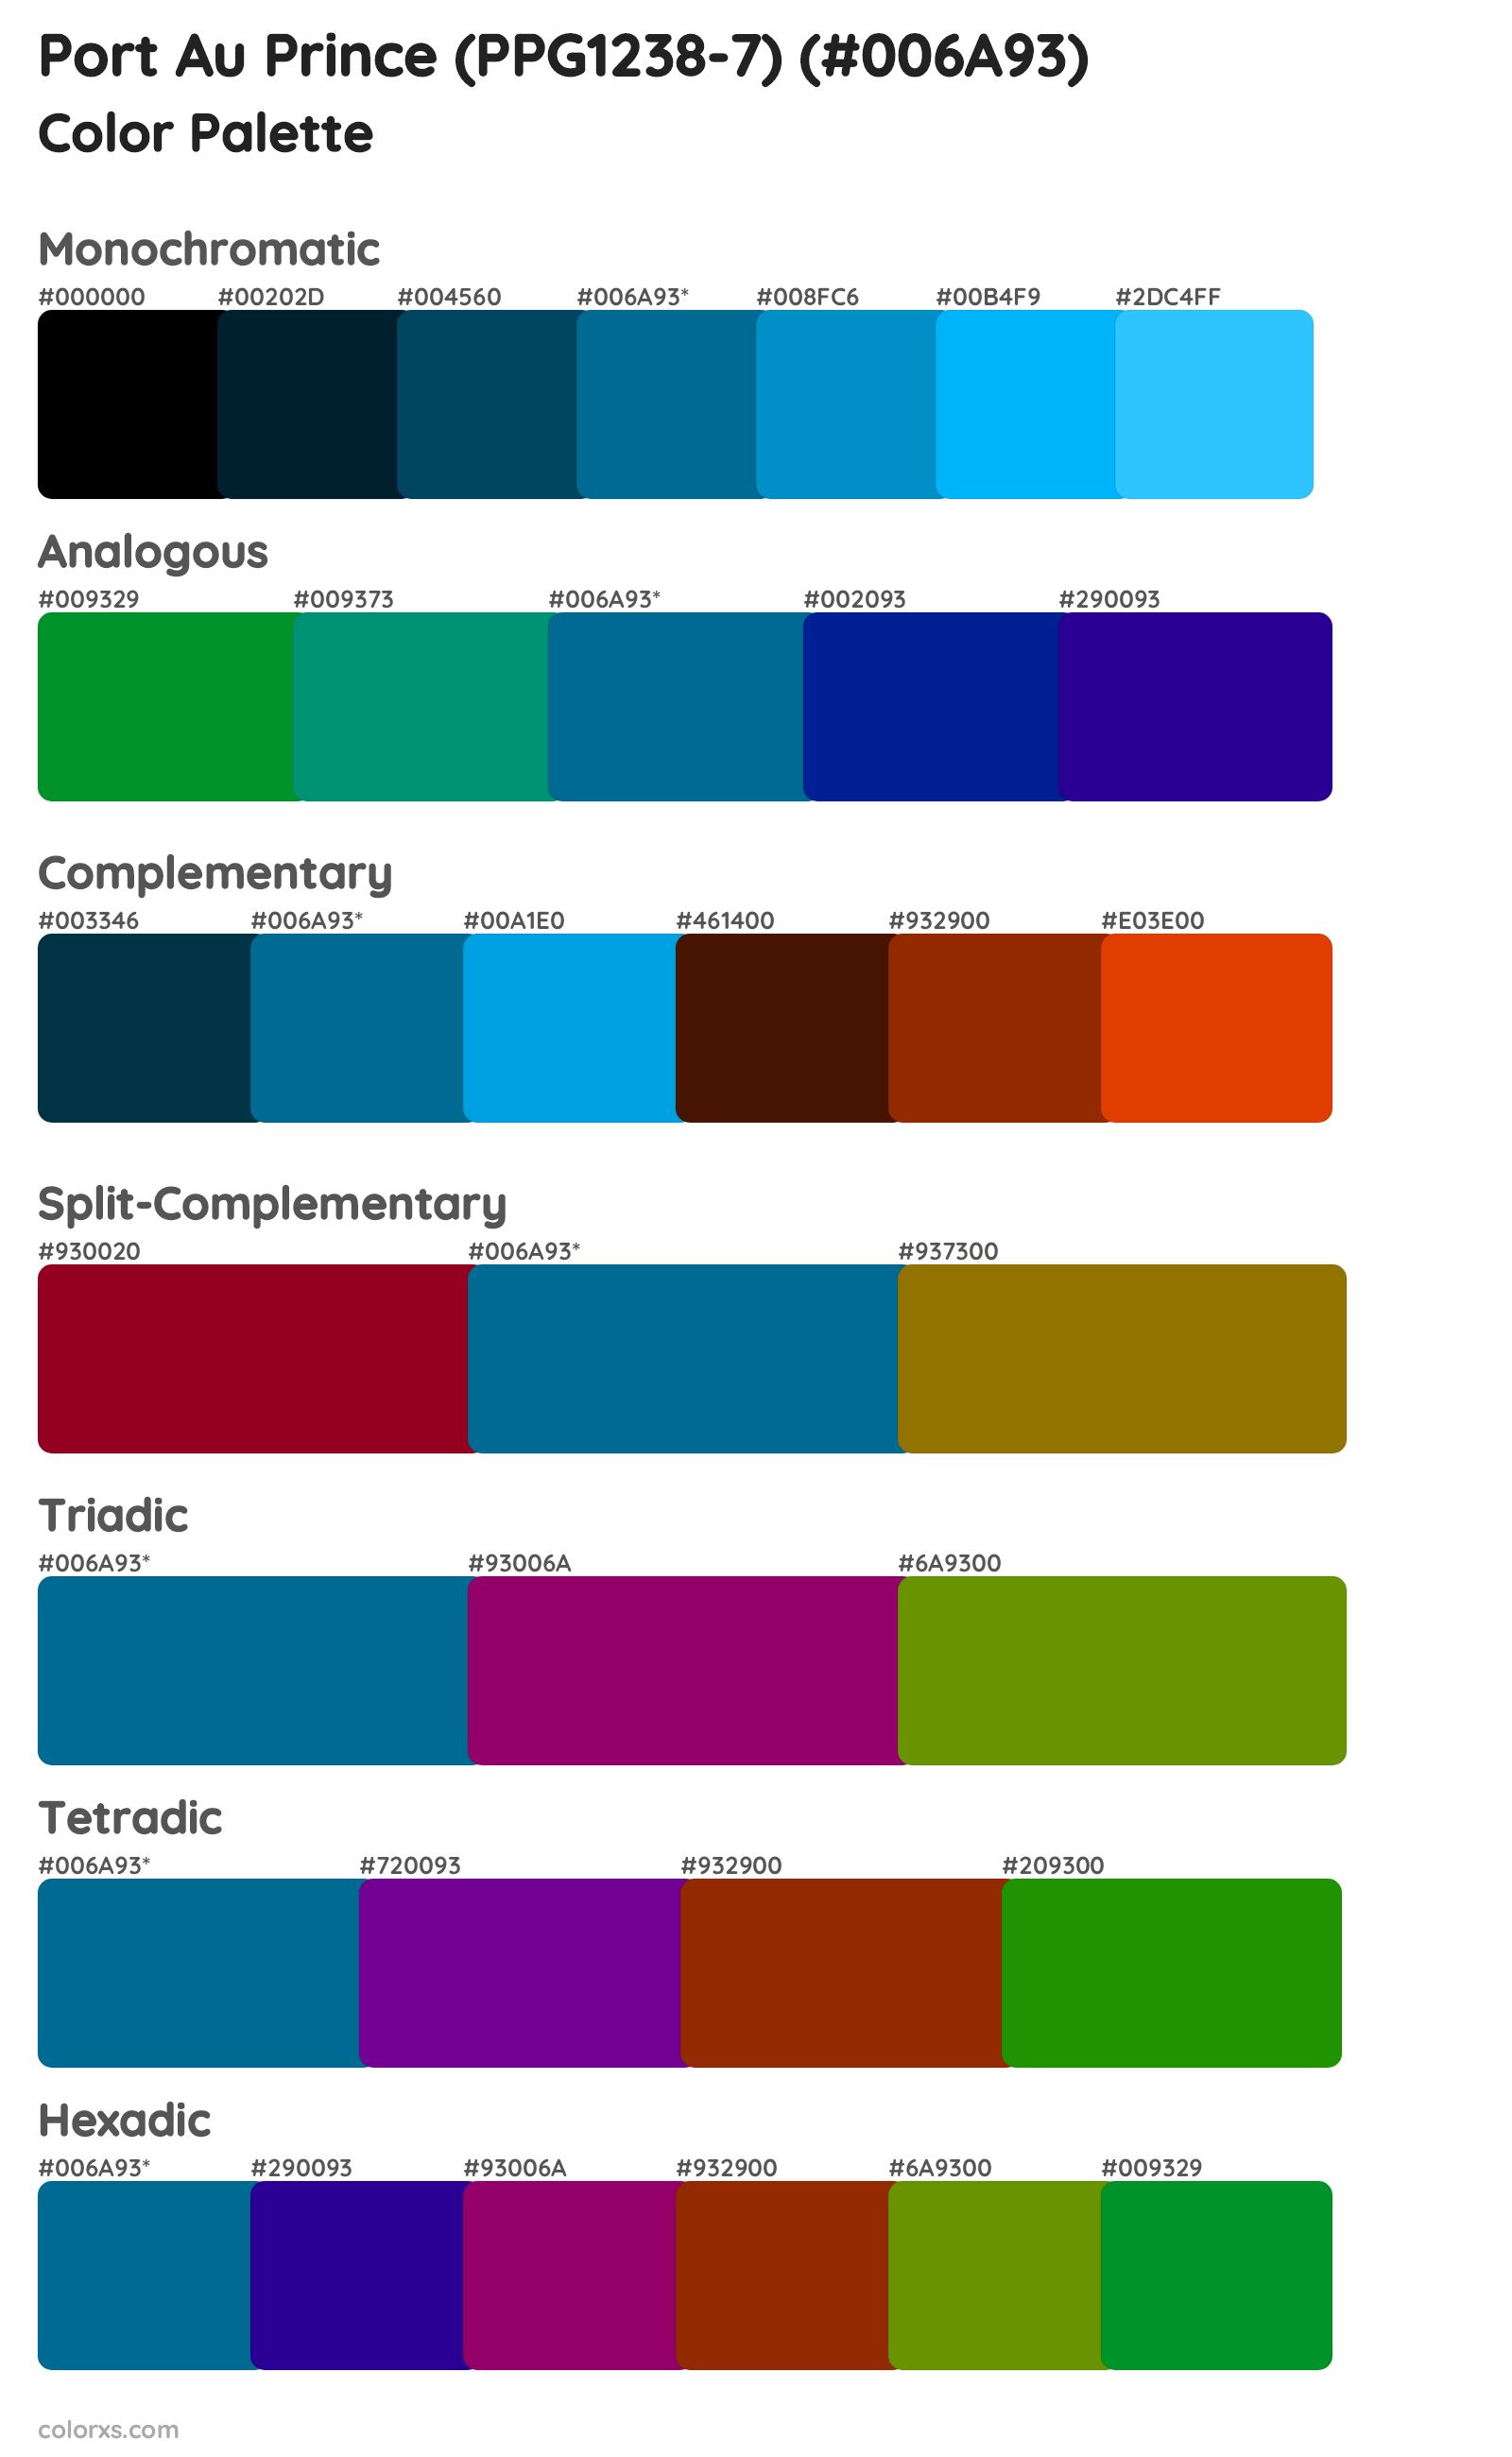 Port Au Prince (PPG1238-7) Color Scheme Palettes